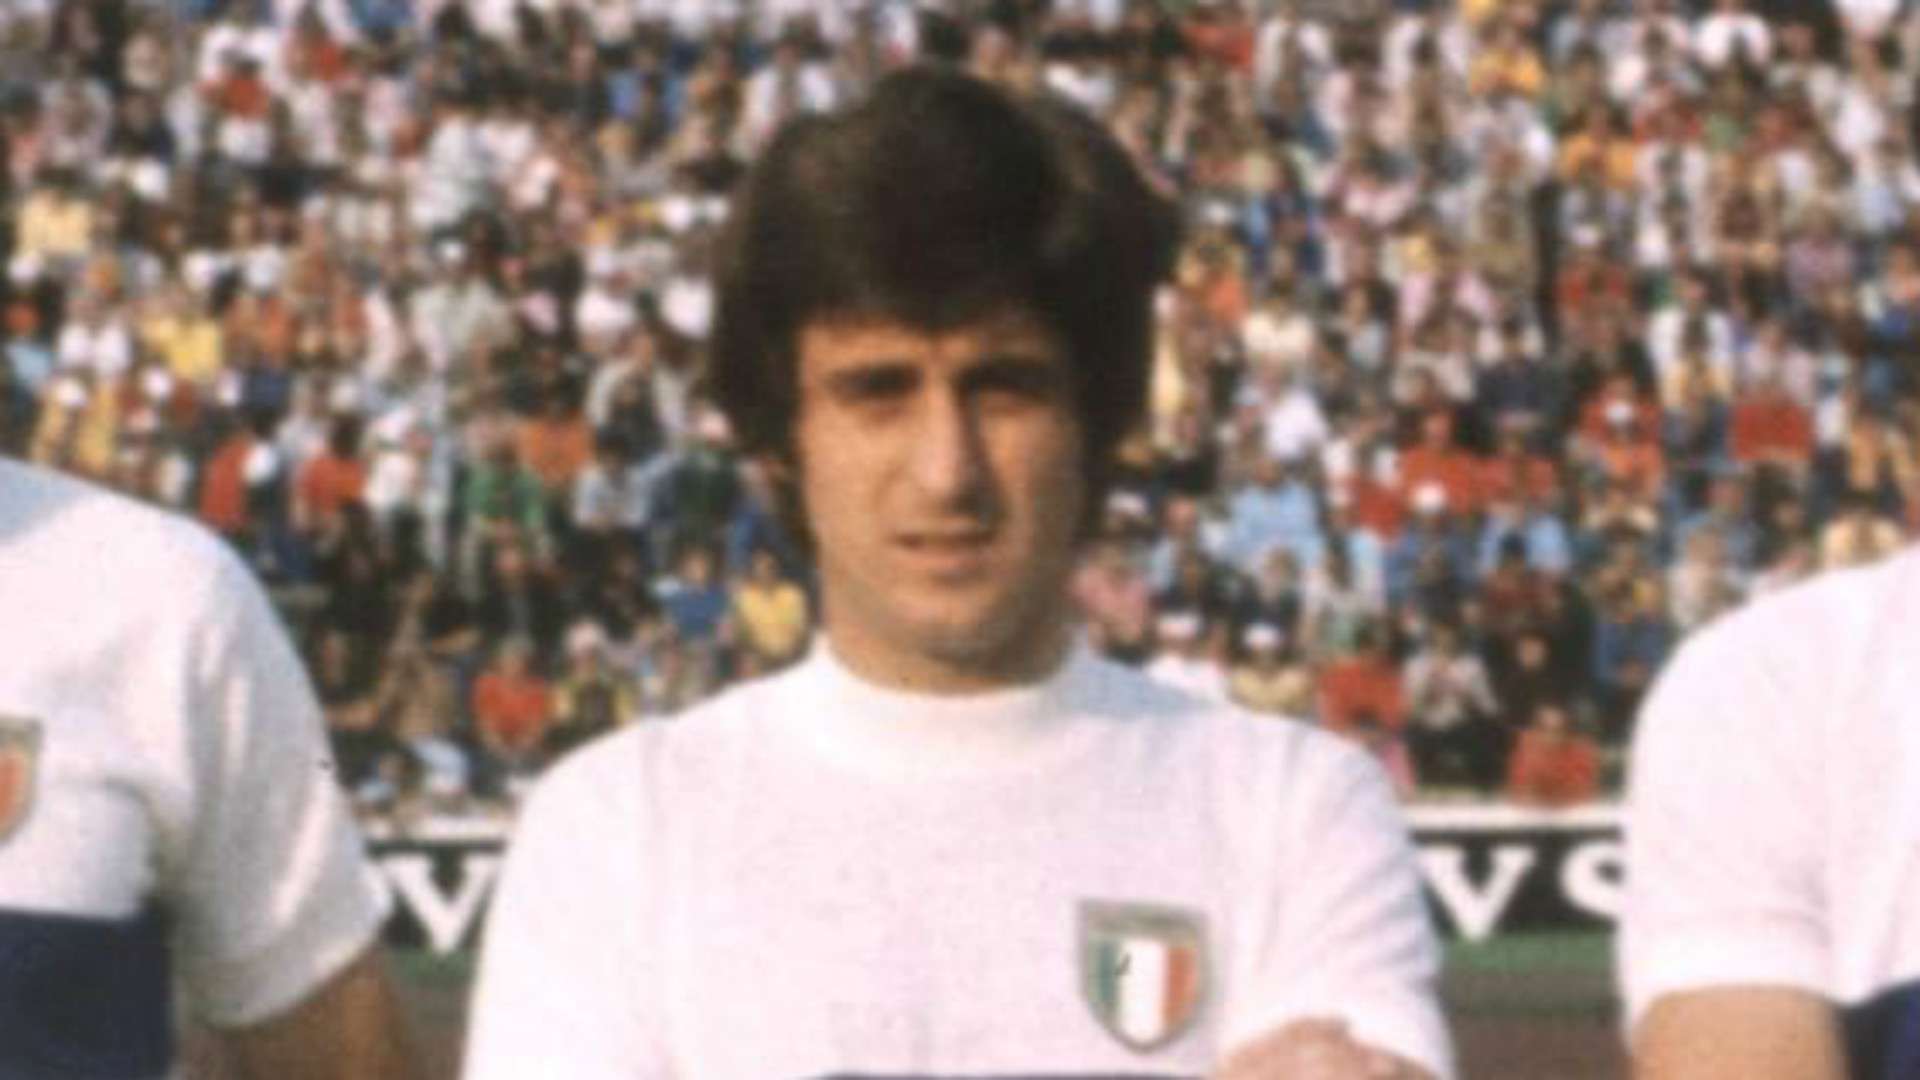 Gianni Rivera